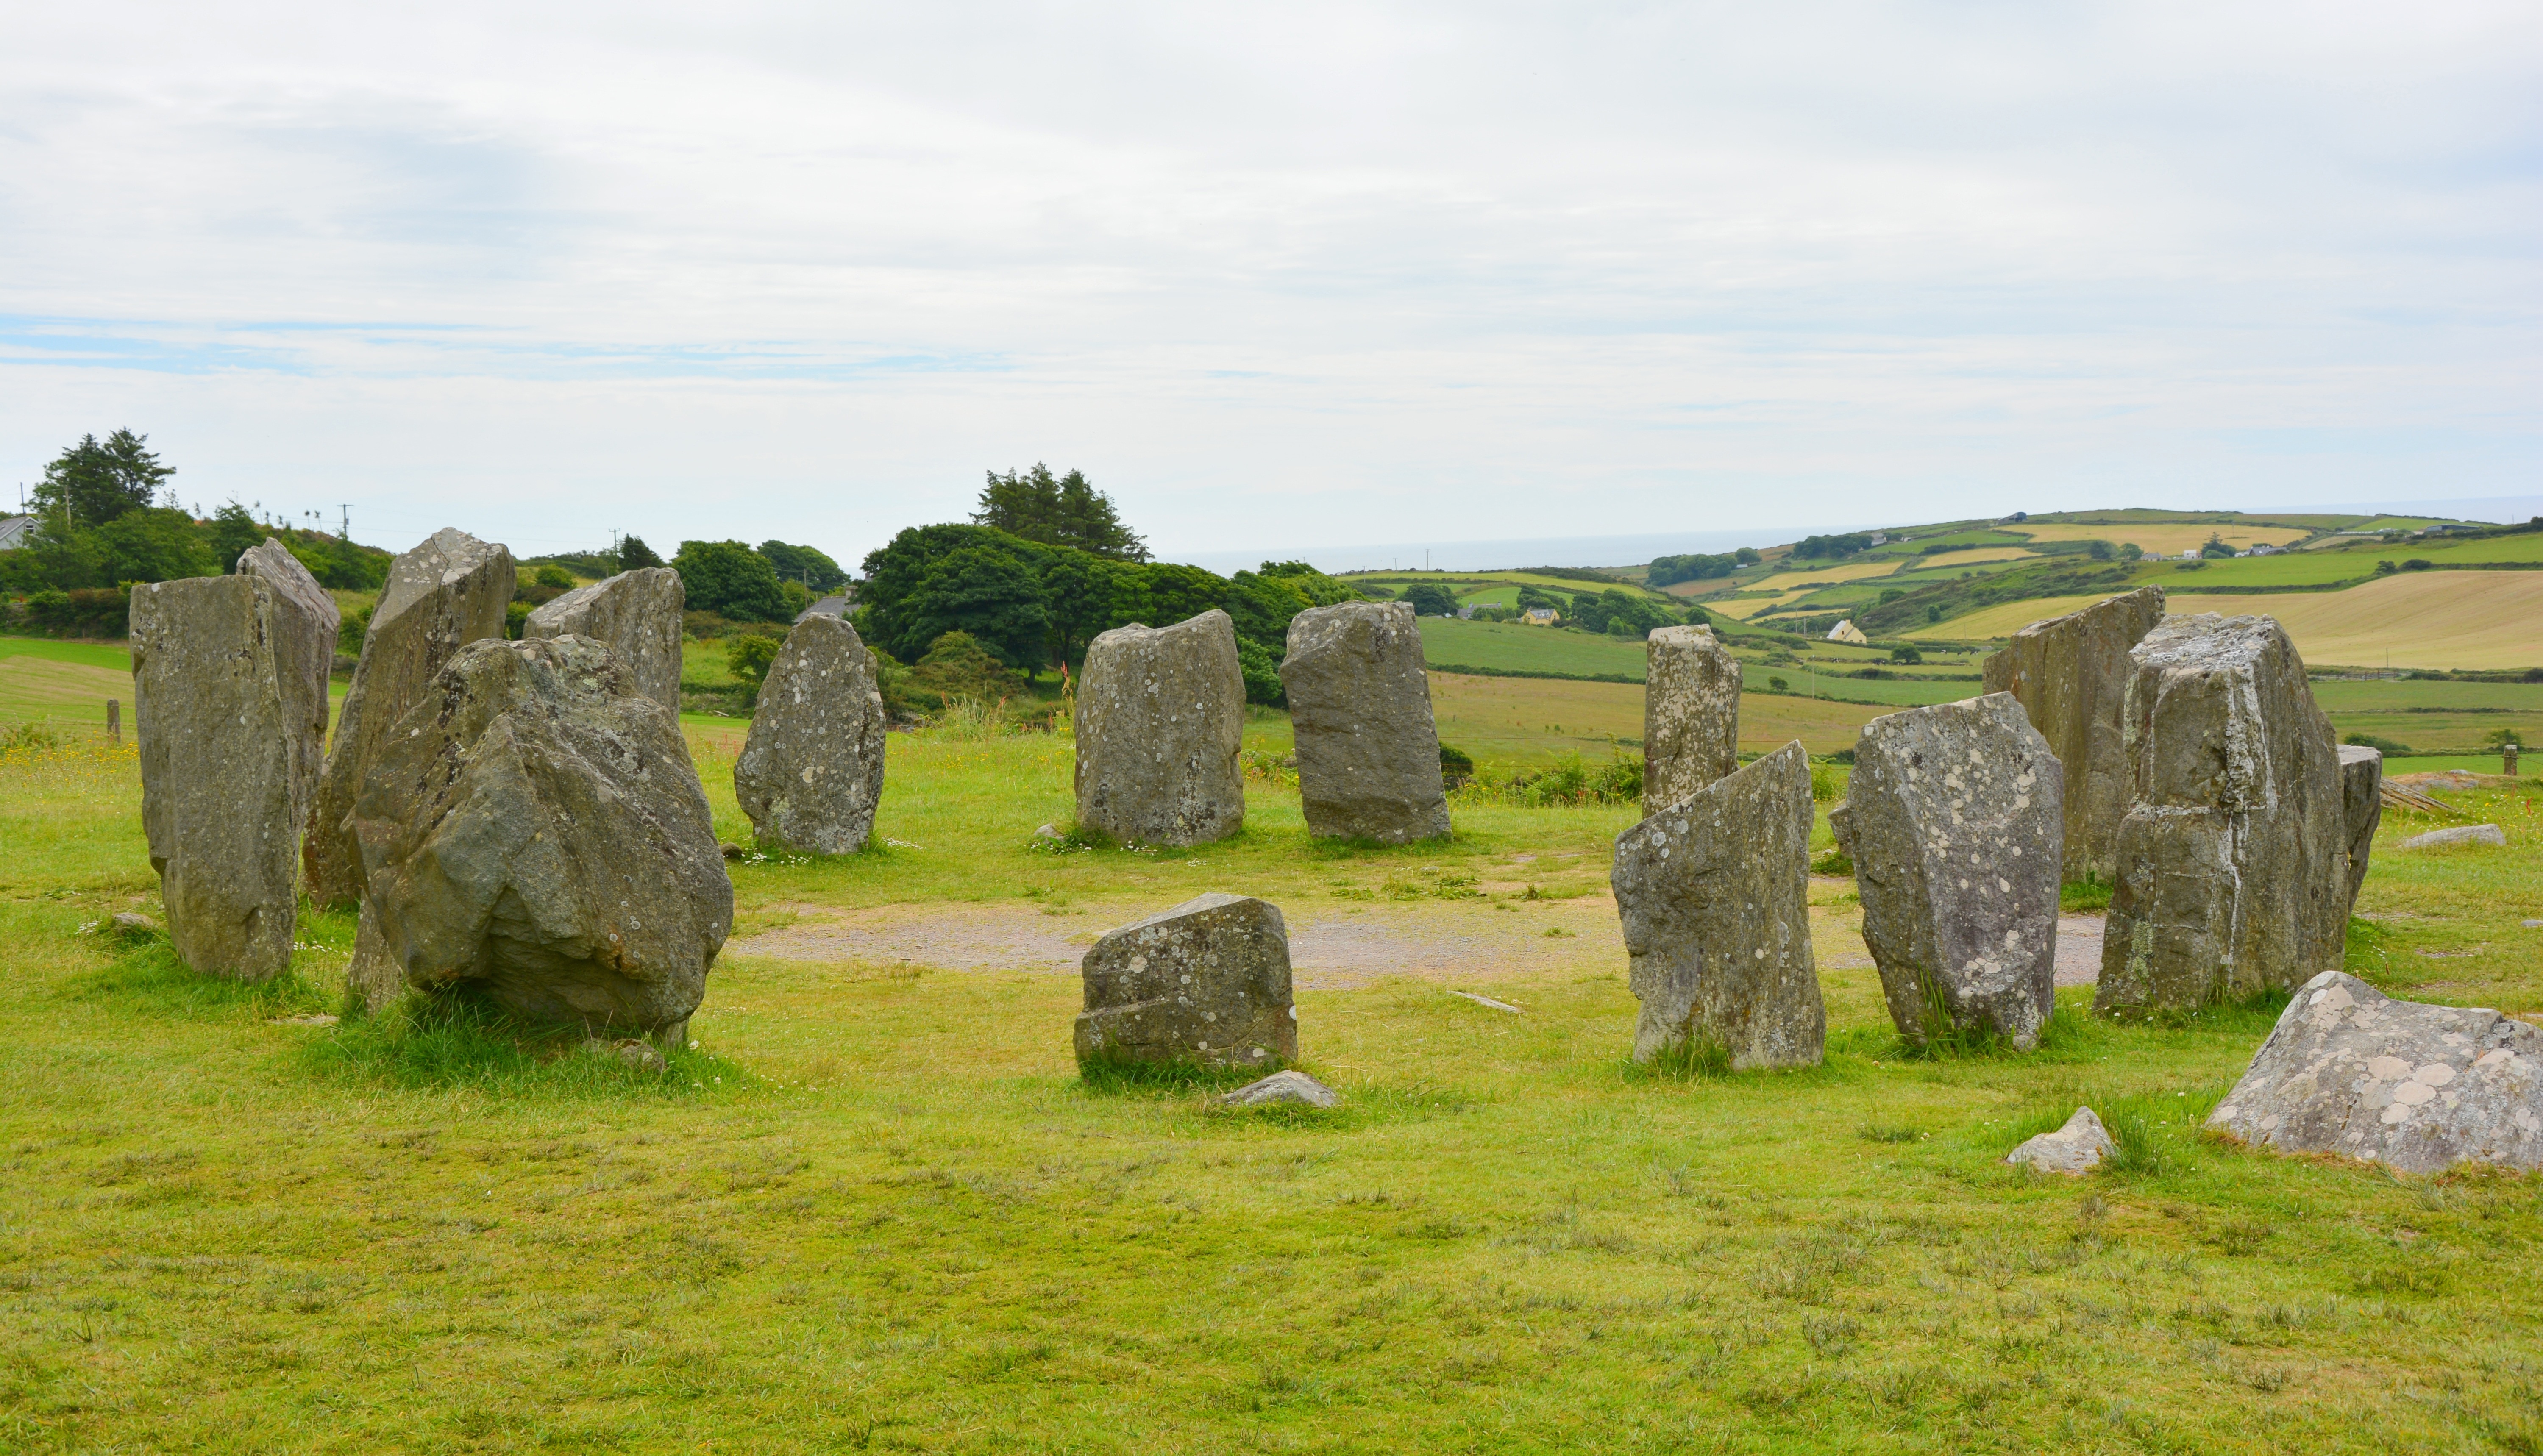 Their stones. Ирландия Стоунхендж. Шотландия Стоунхендж. Мегалиты Ирландии. Мегалитические памятники в Ирландии.